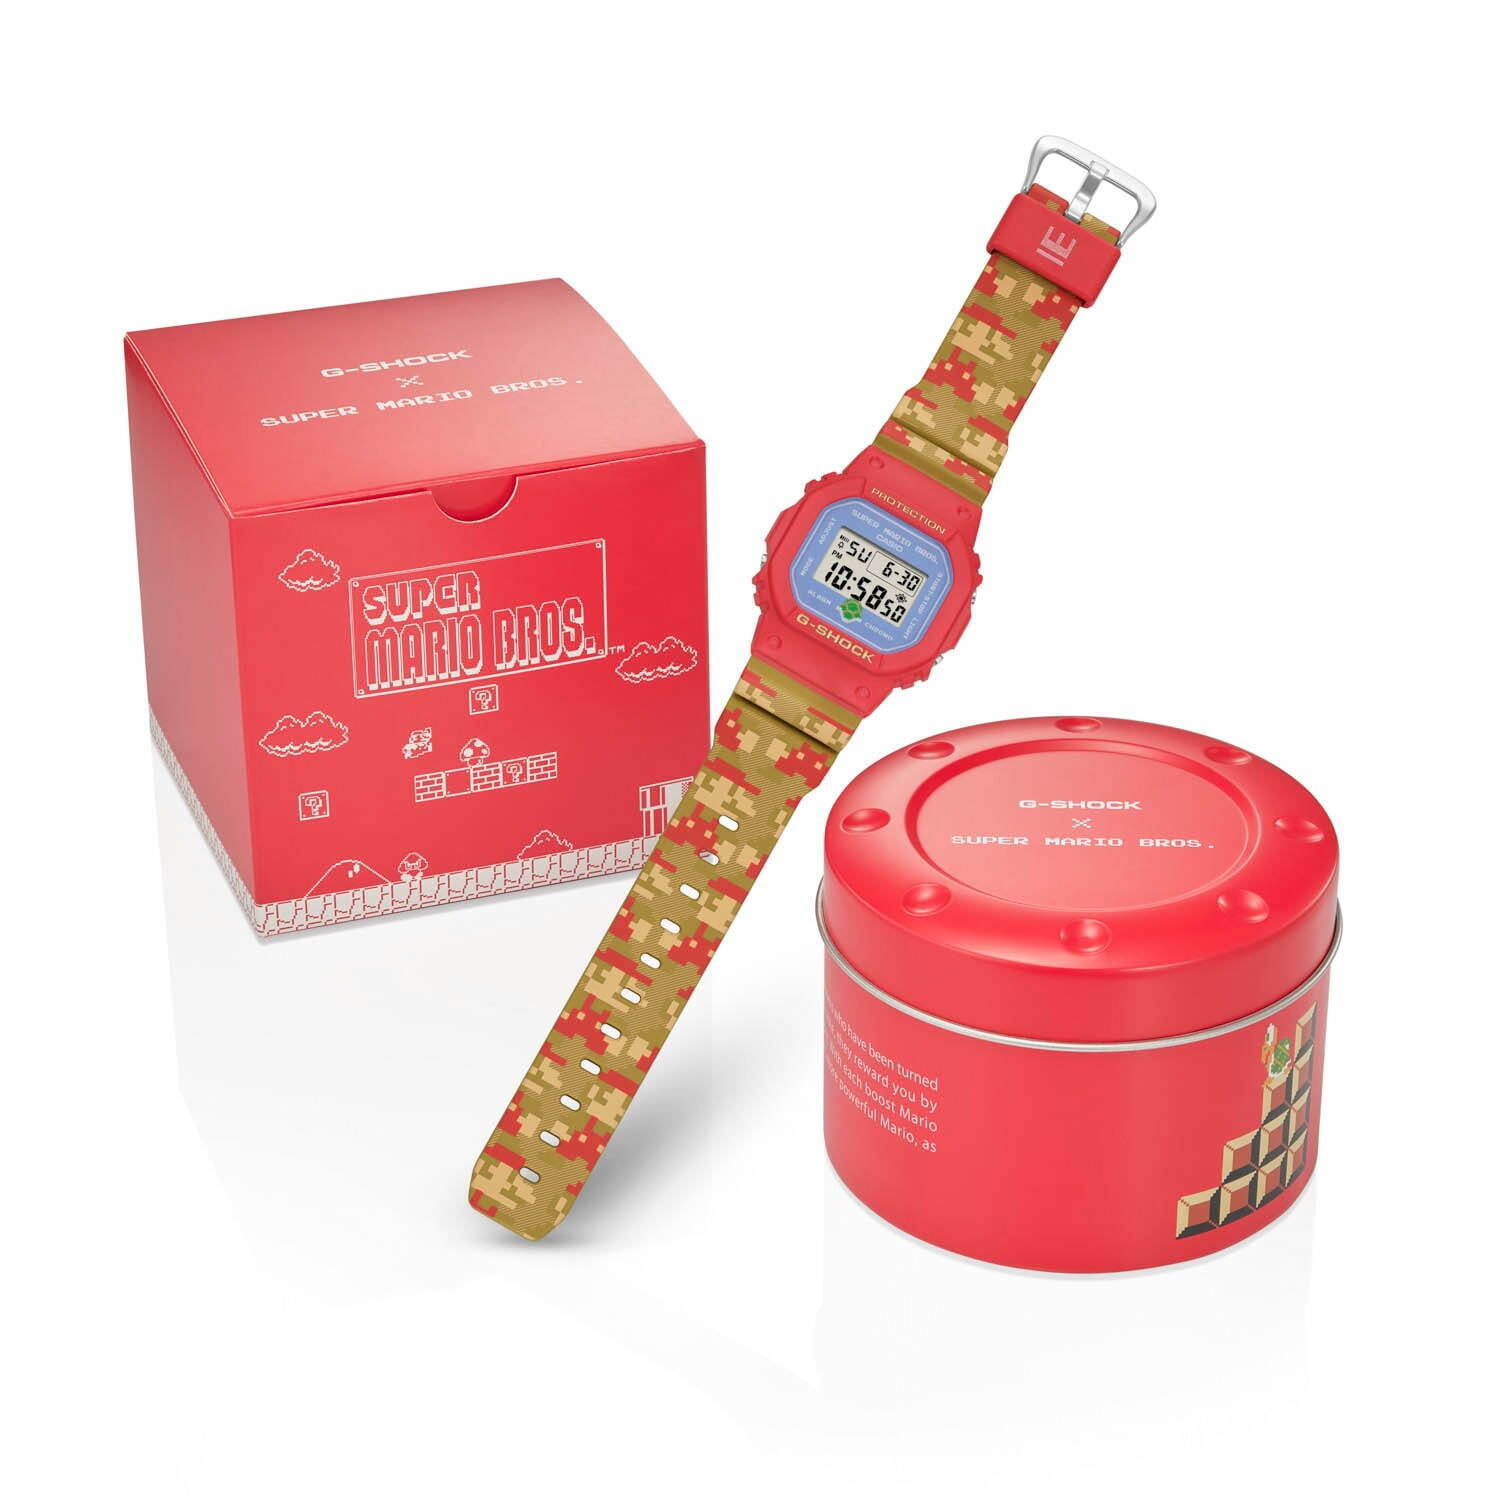 G-SHOCK「スーパーマリオブラザーズ」腕時計、1UPキノコを獲得するマリオのバックライト - ファッションプレス